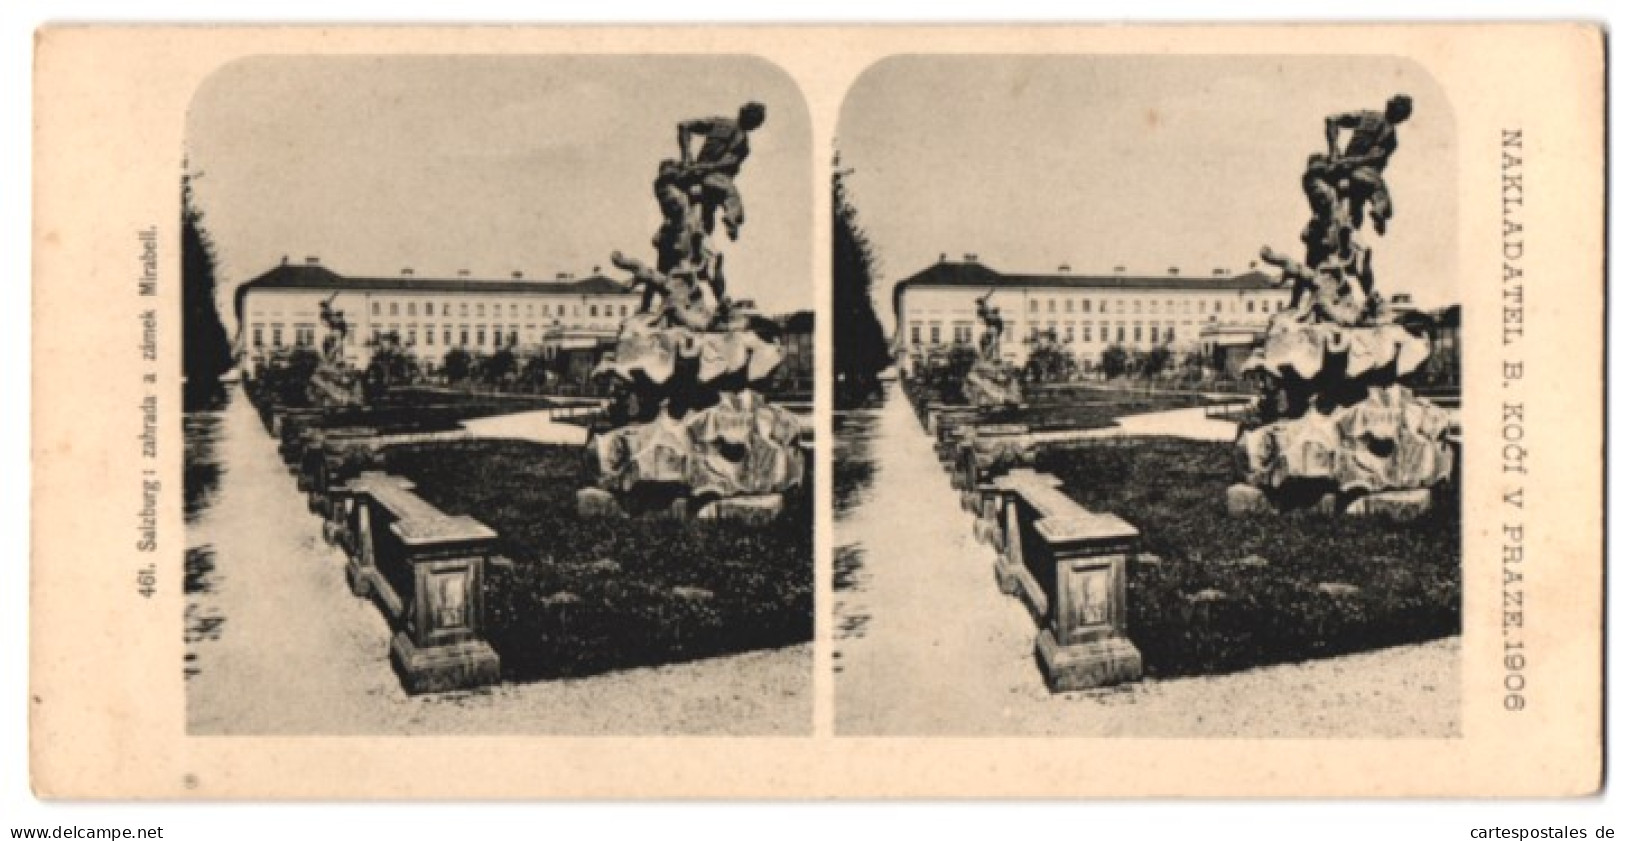 Stereo-Fotografie Lichtdruck Bedrich Koci, Prag, Ansicht Salzburg, Schloss Mirabell, Statue Im Schlosspark  - Stereo-Photographie